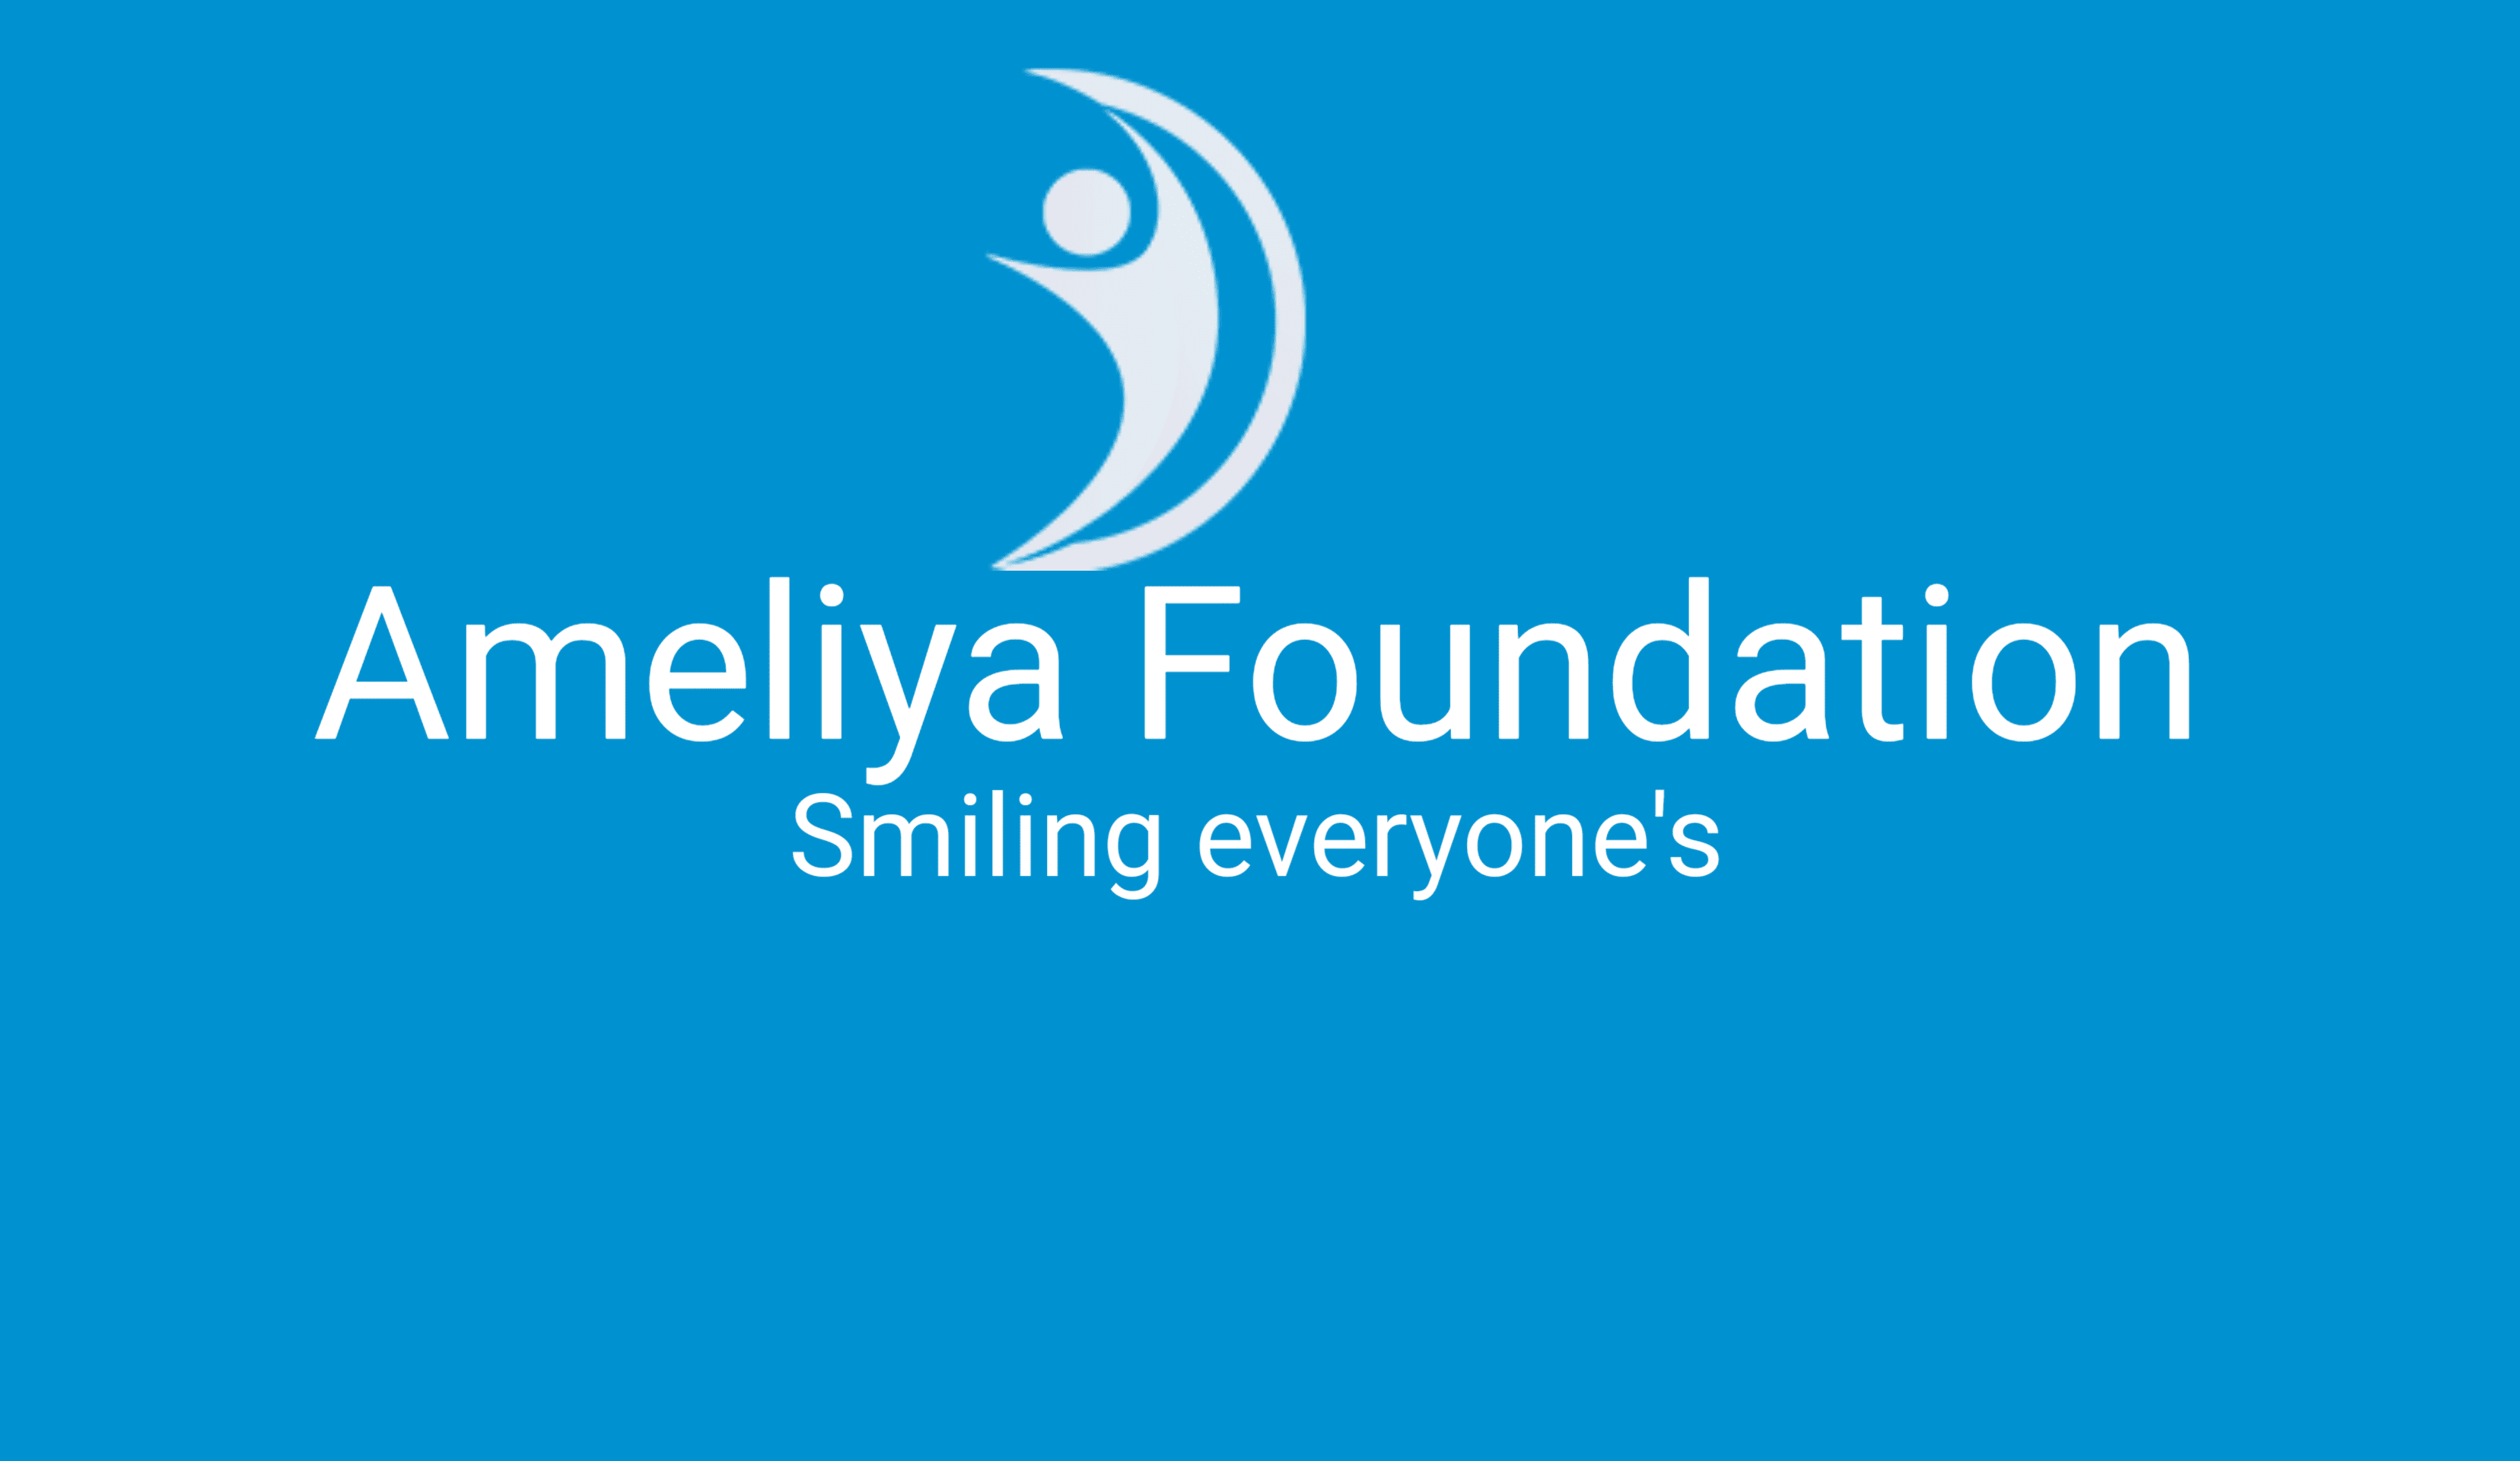 Ameliya Foundation